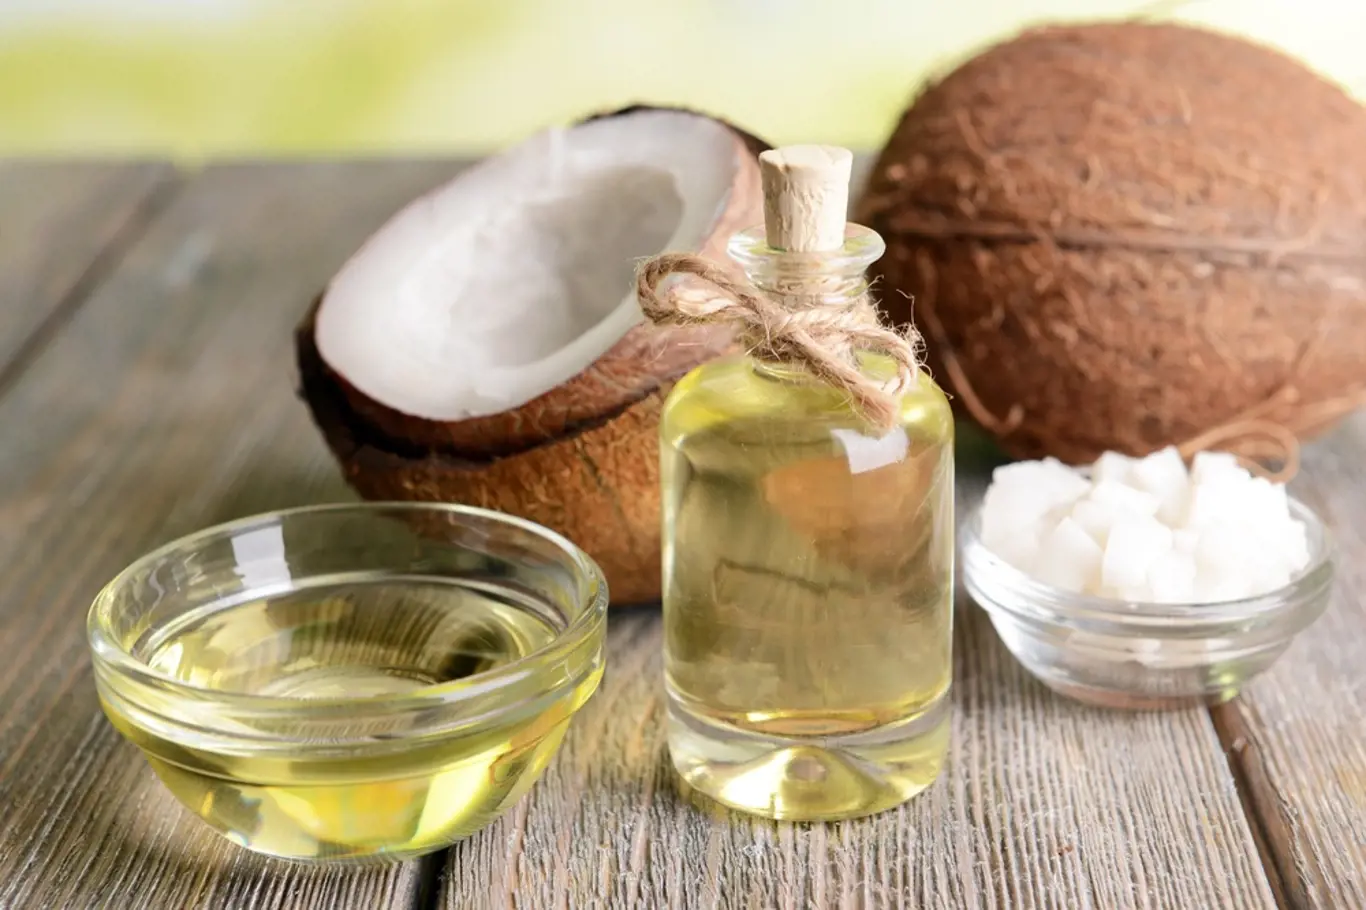 Kokosový olej má na náš organismus blahodárné účinky.